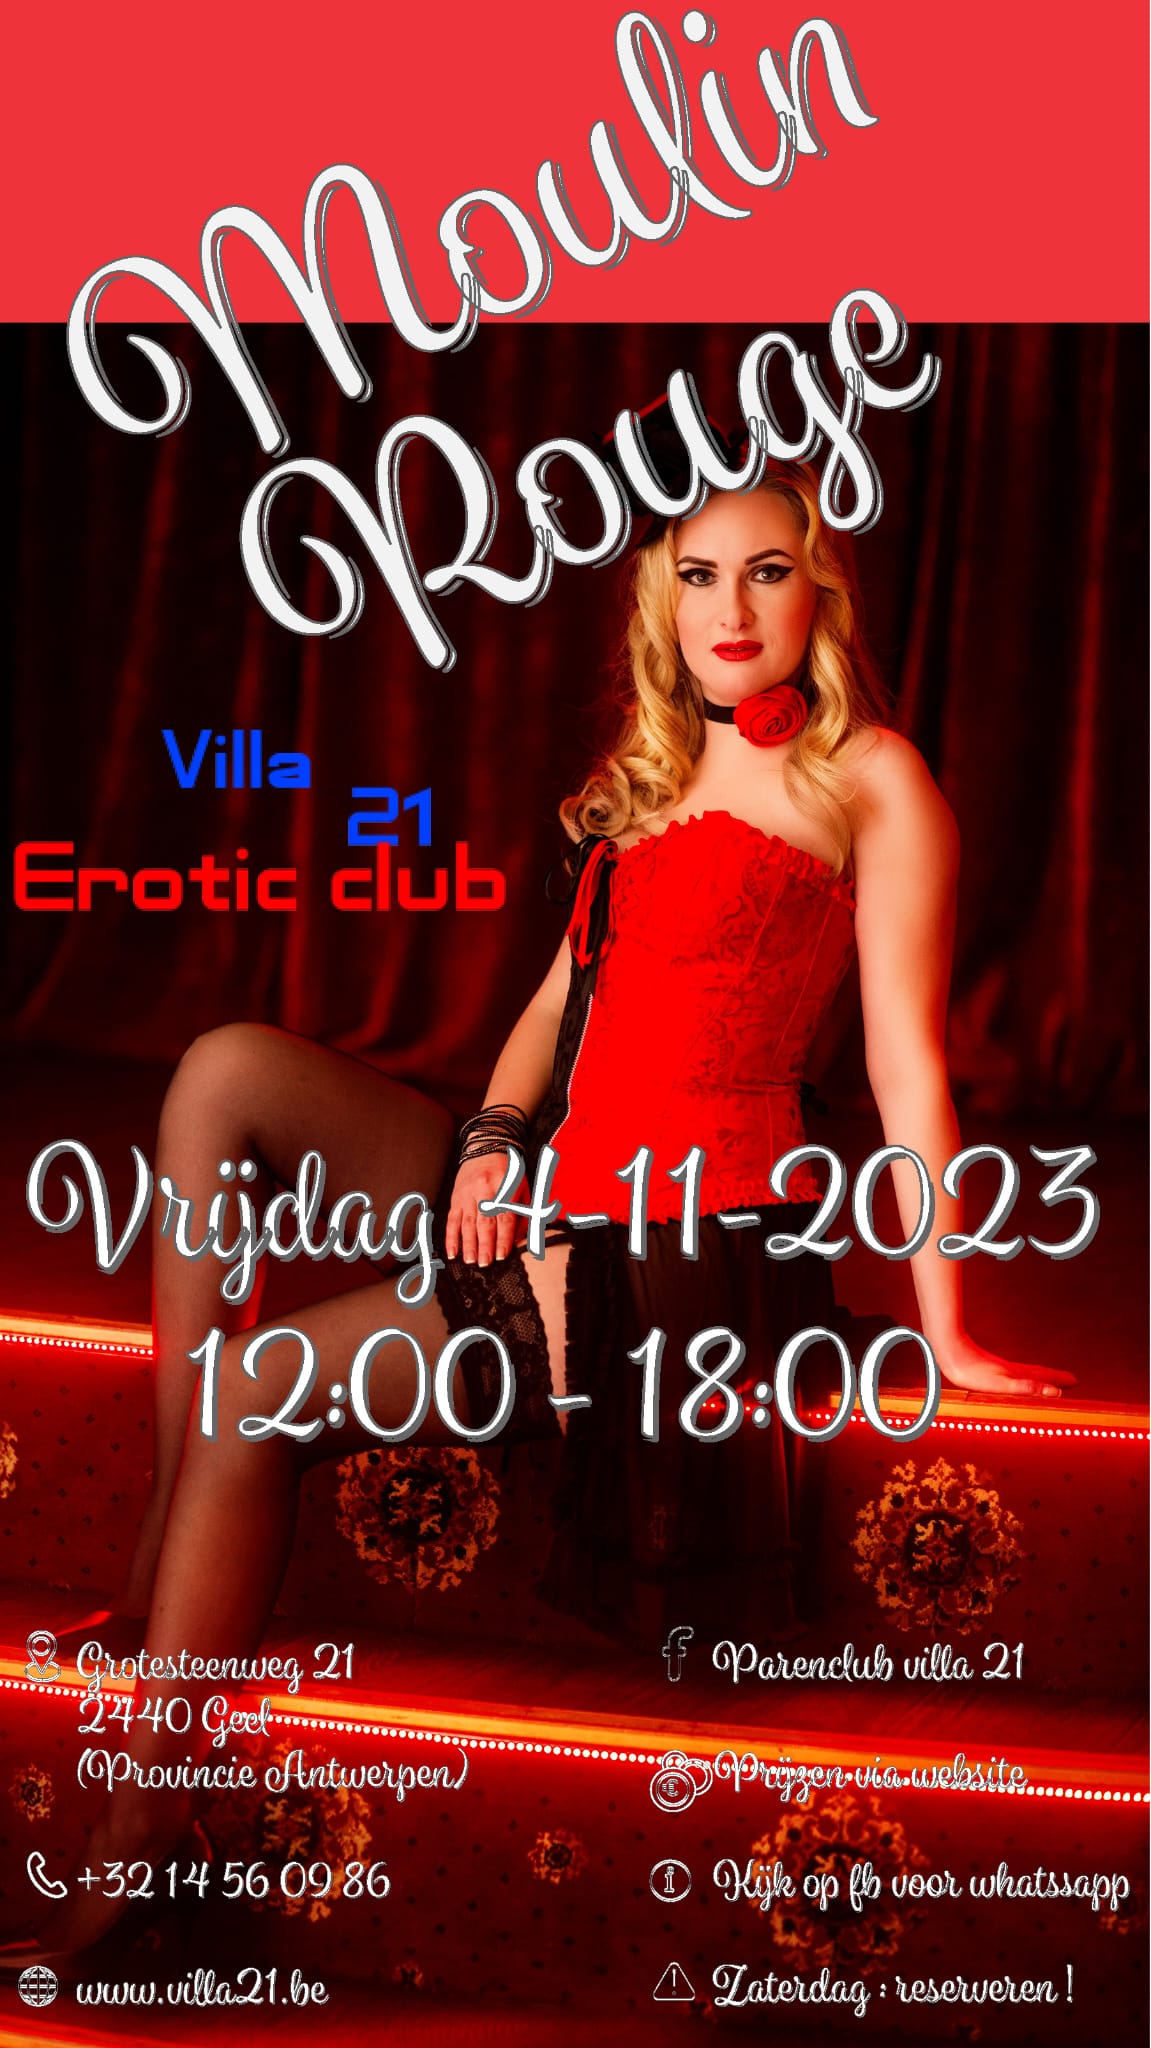 Vrijdag Moulin Rouge flyer